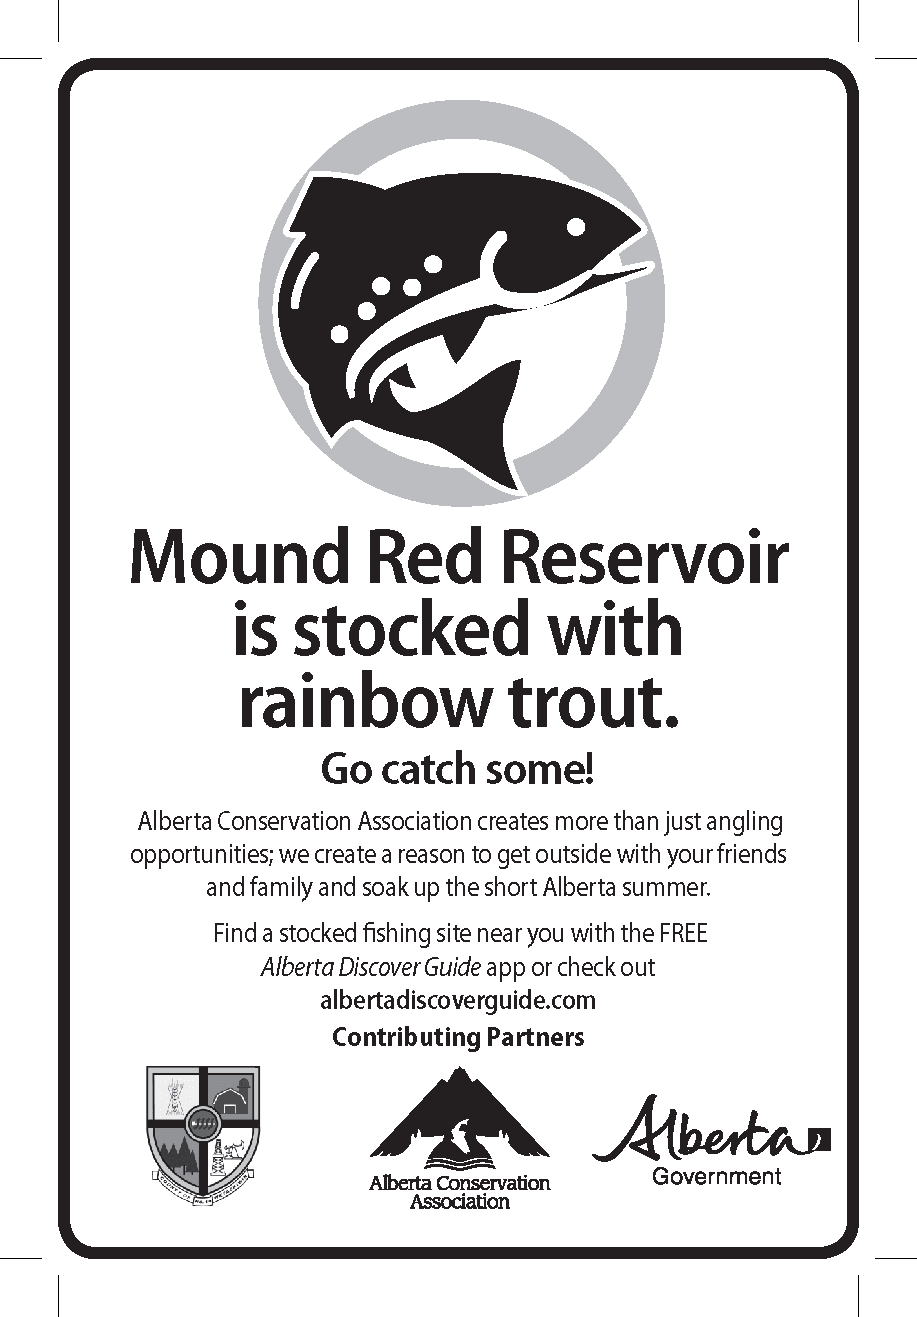 2018 Mound Red